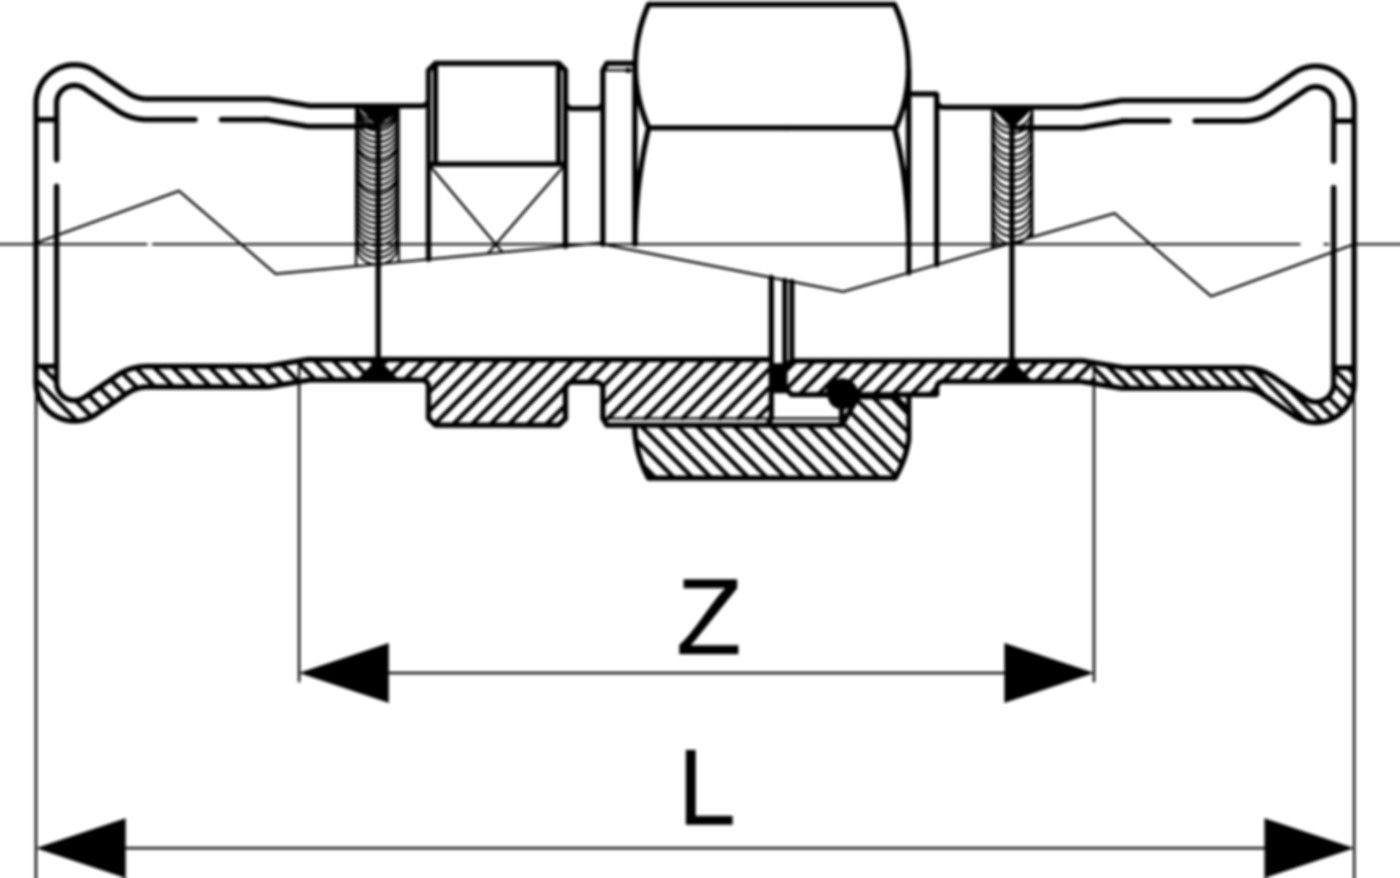 Doppelanschlussverschraubung fld. S68TG 35 mm, mit Überwurfmutter Inox - Eurotubi Press-Formstücke Sanitär